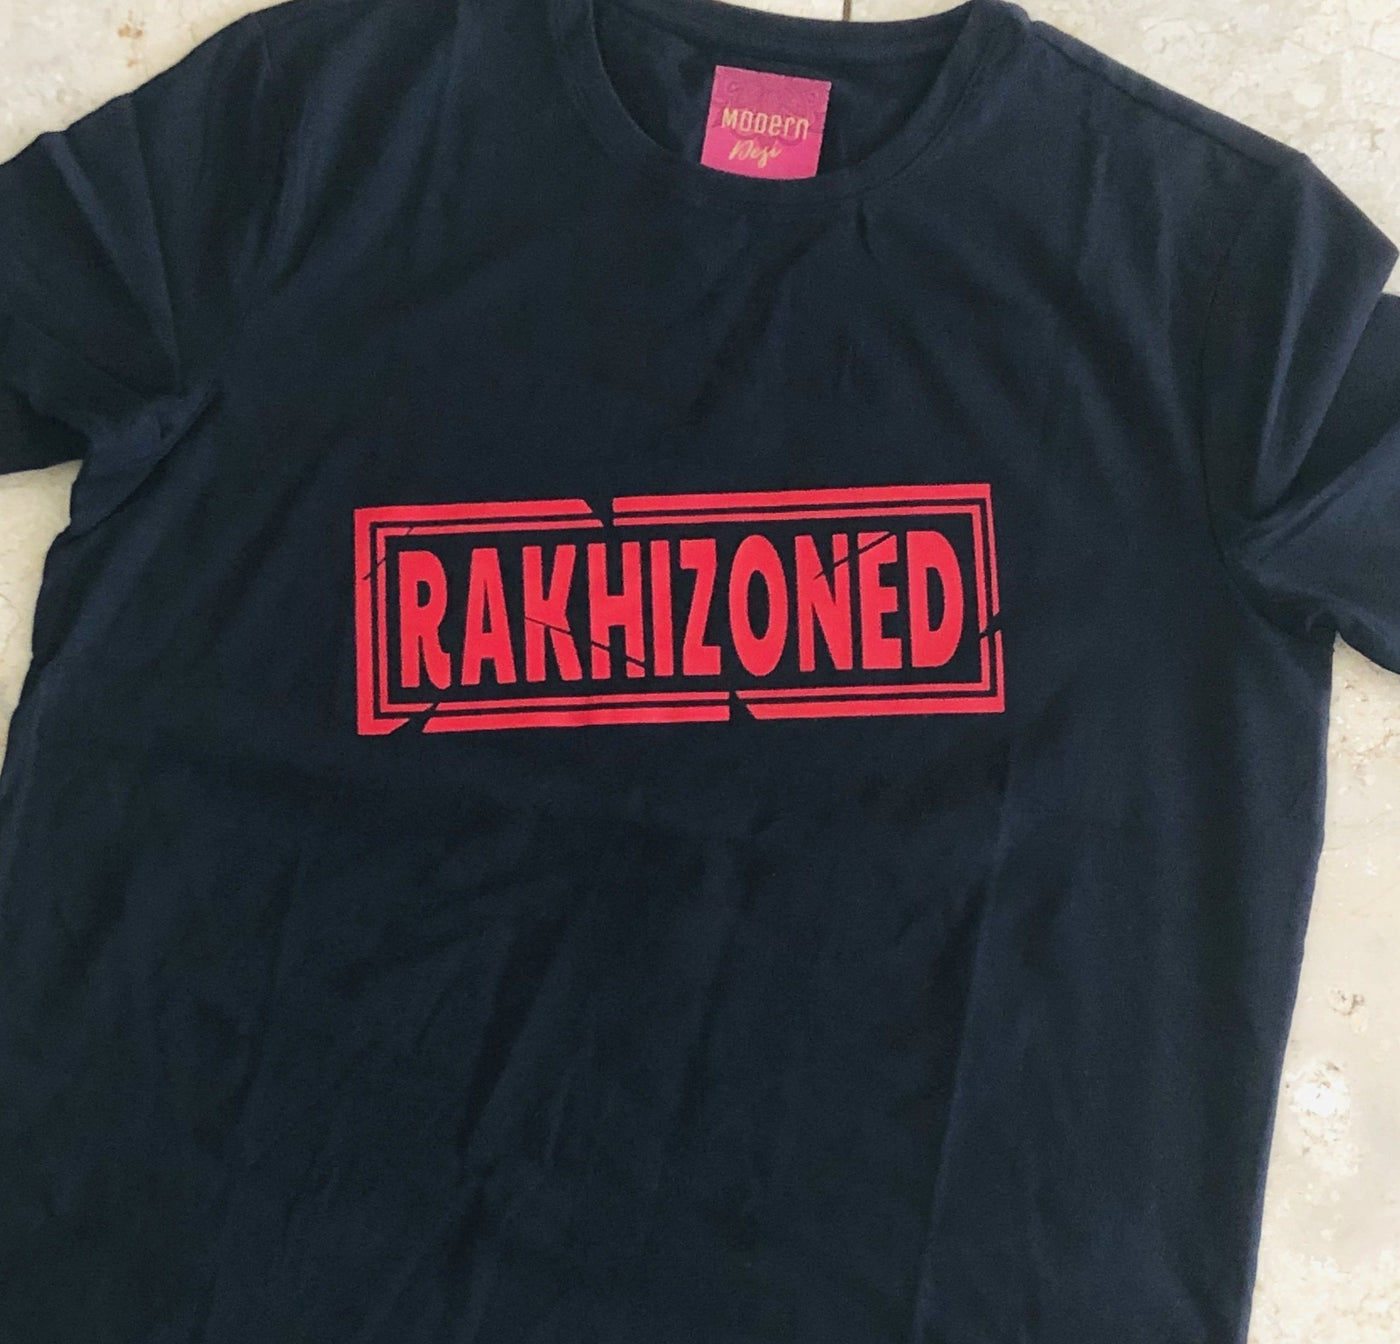 Rakhizoned T-Shirt